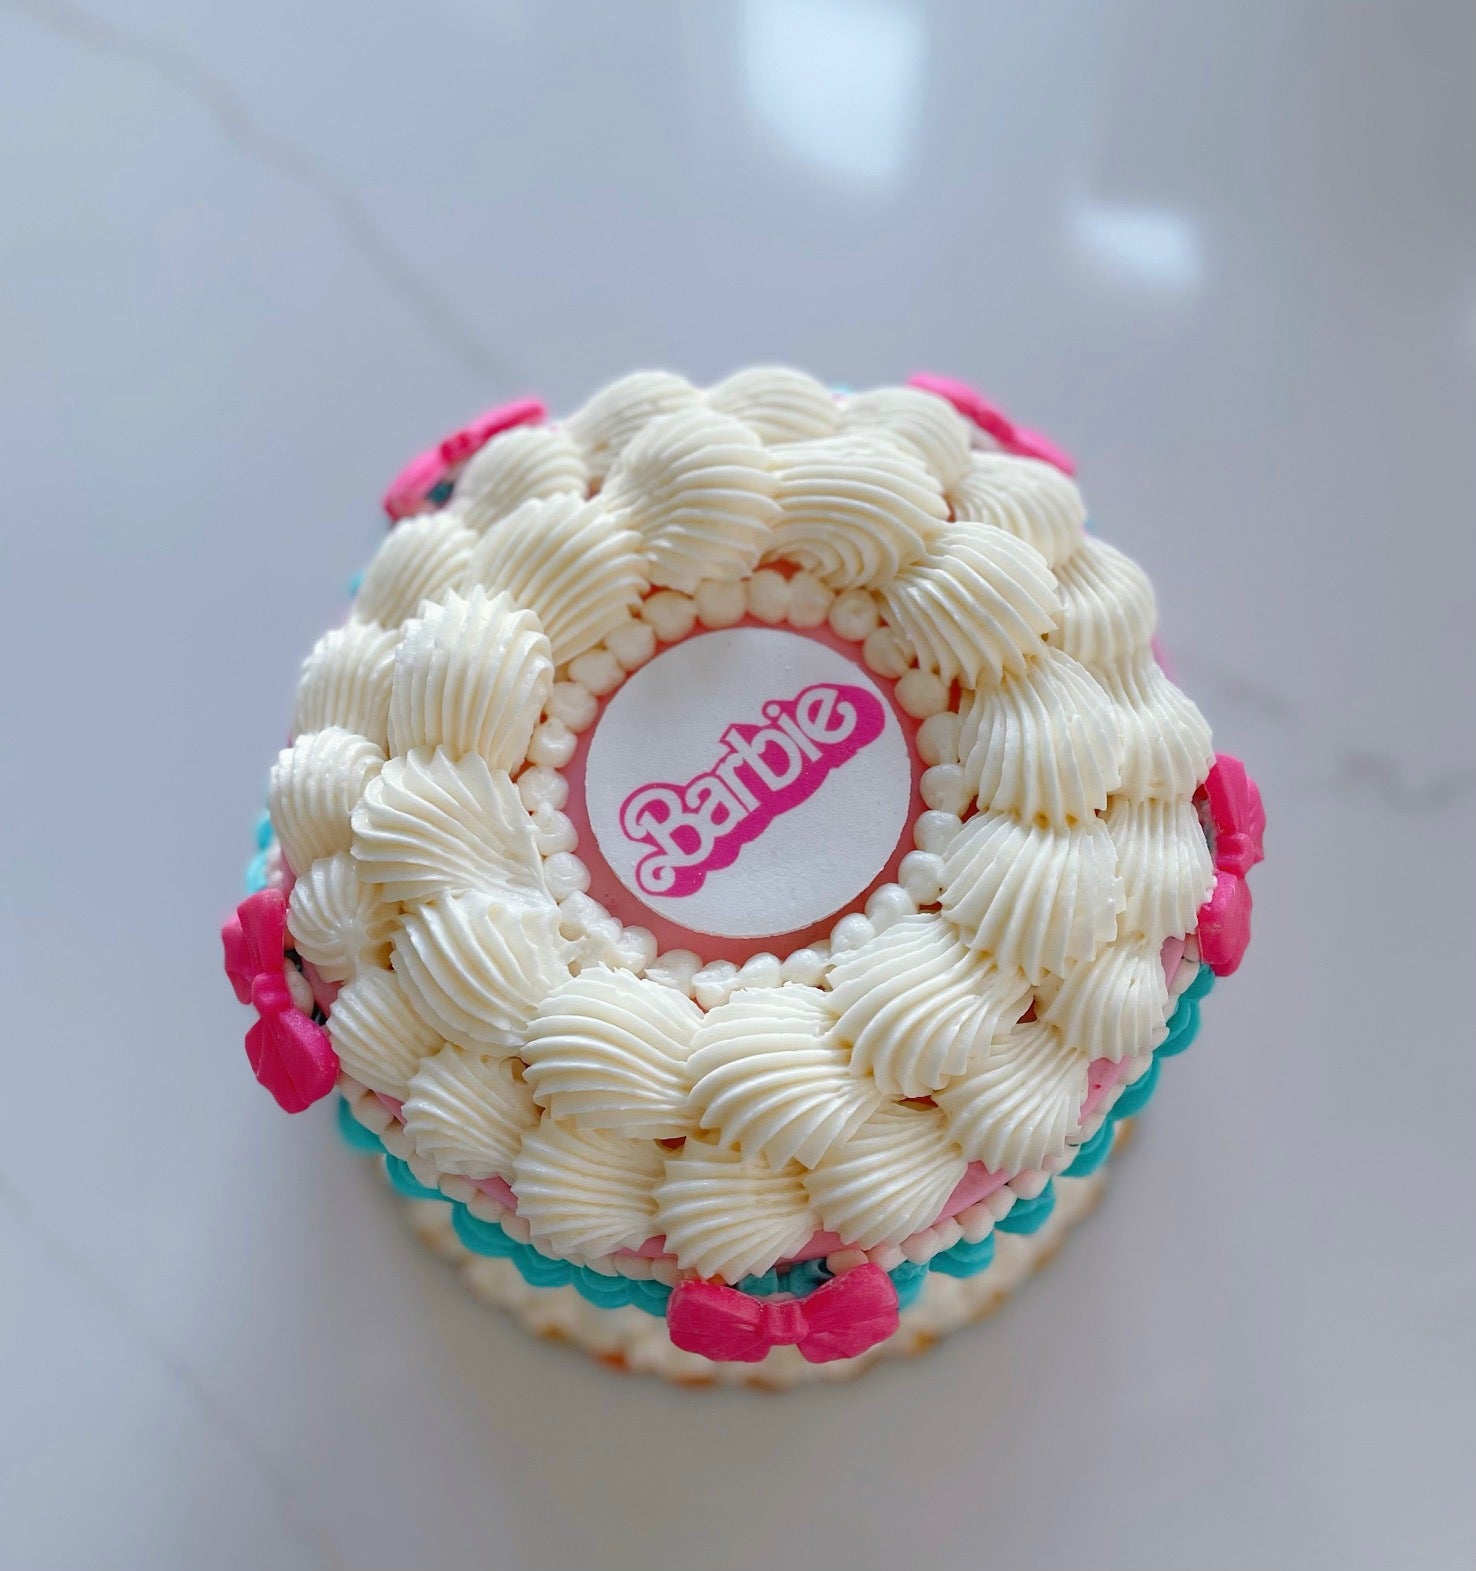 barbies cupcake cake｜TikTok Search